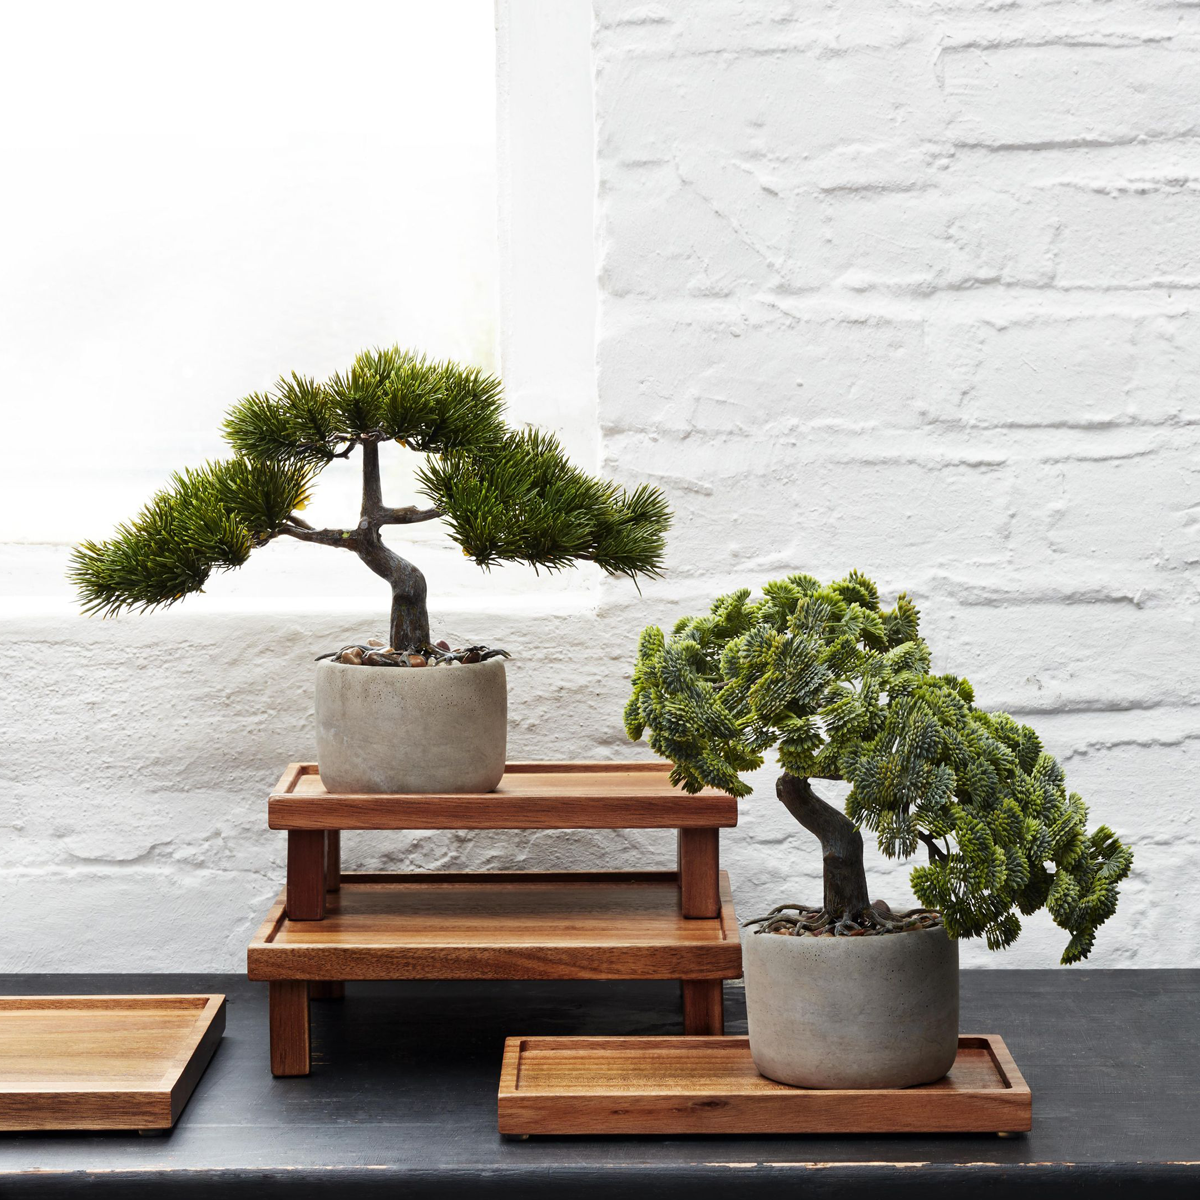 BONSAI 24.5x17.5cm vjestacki bonsai u saksiji